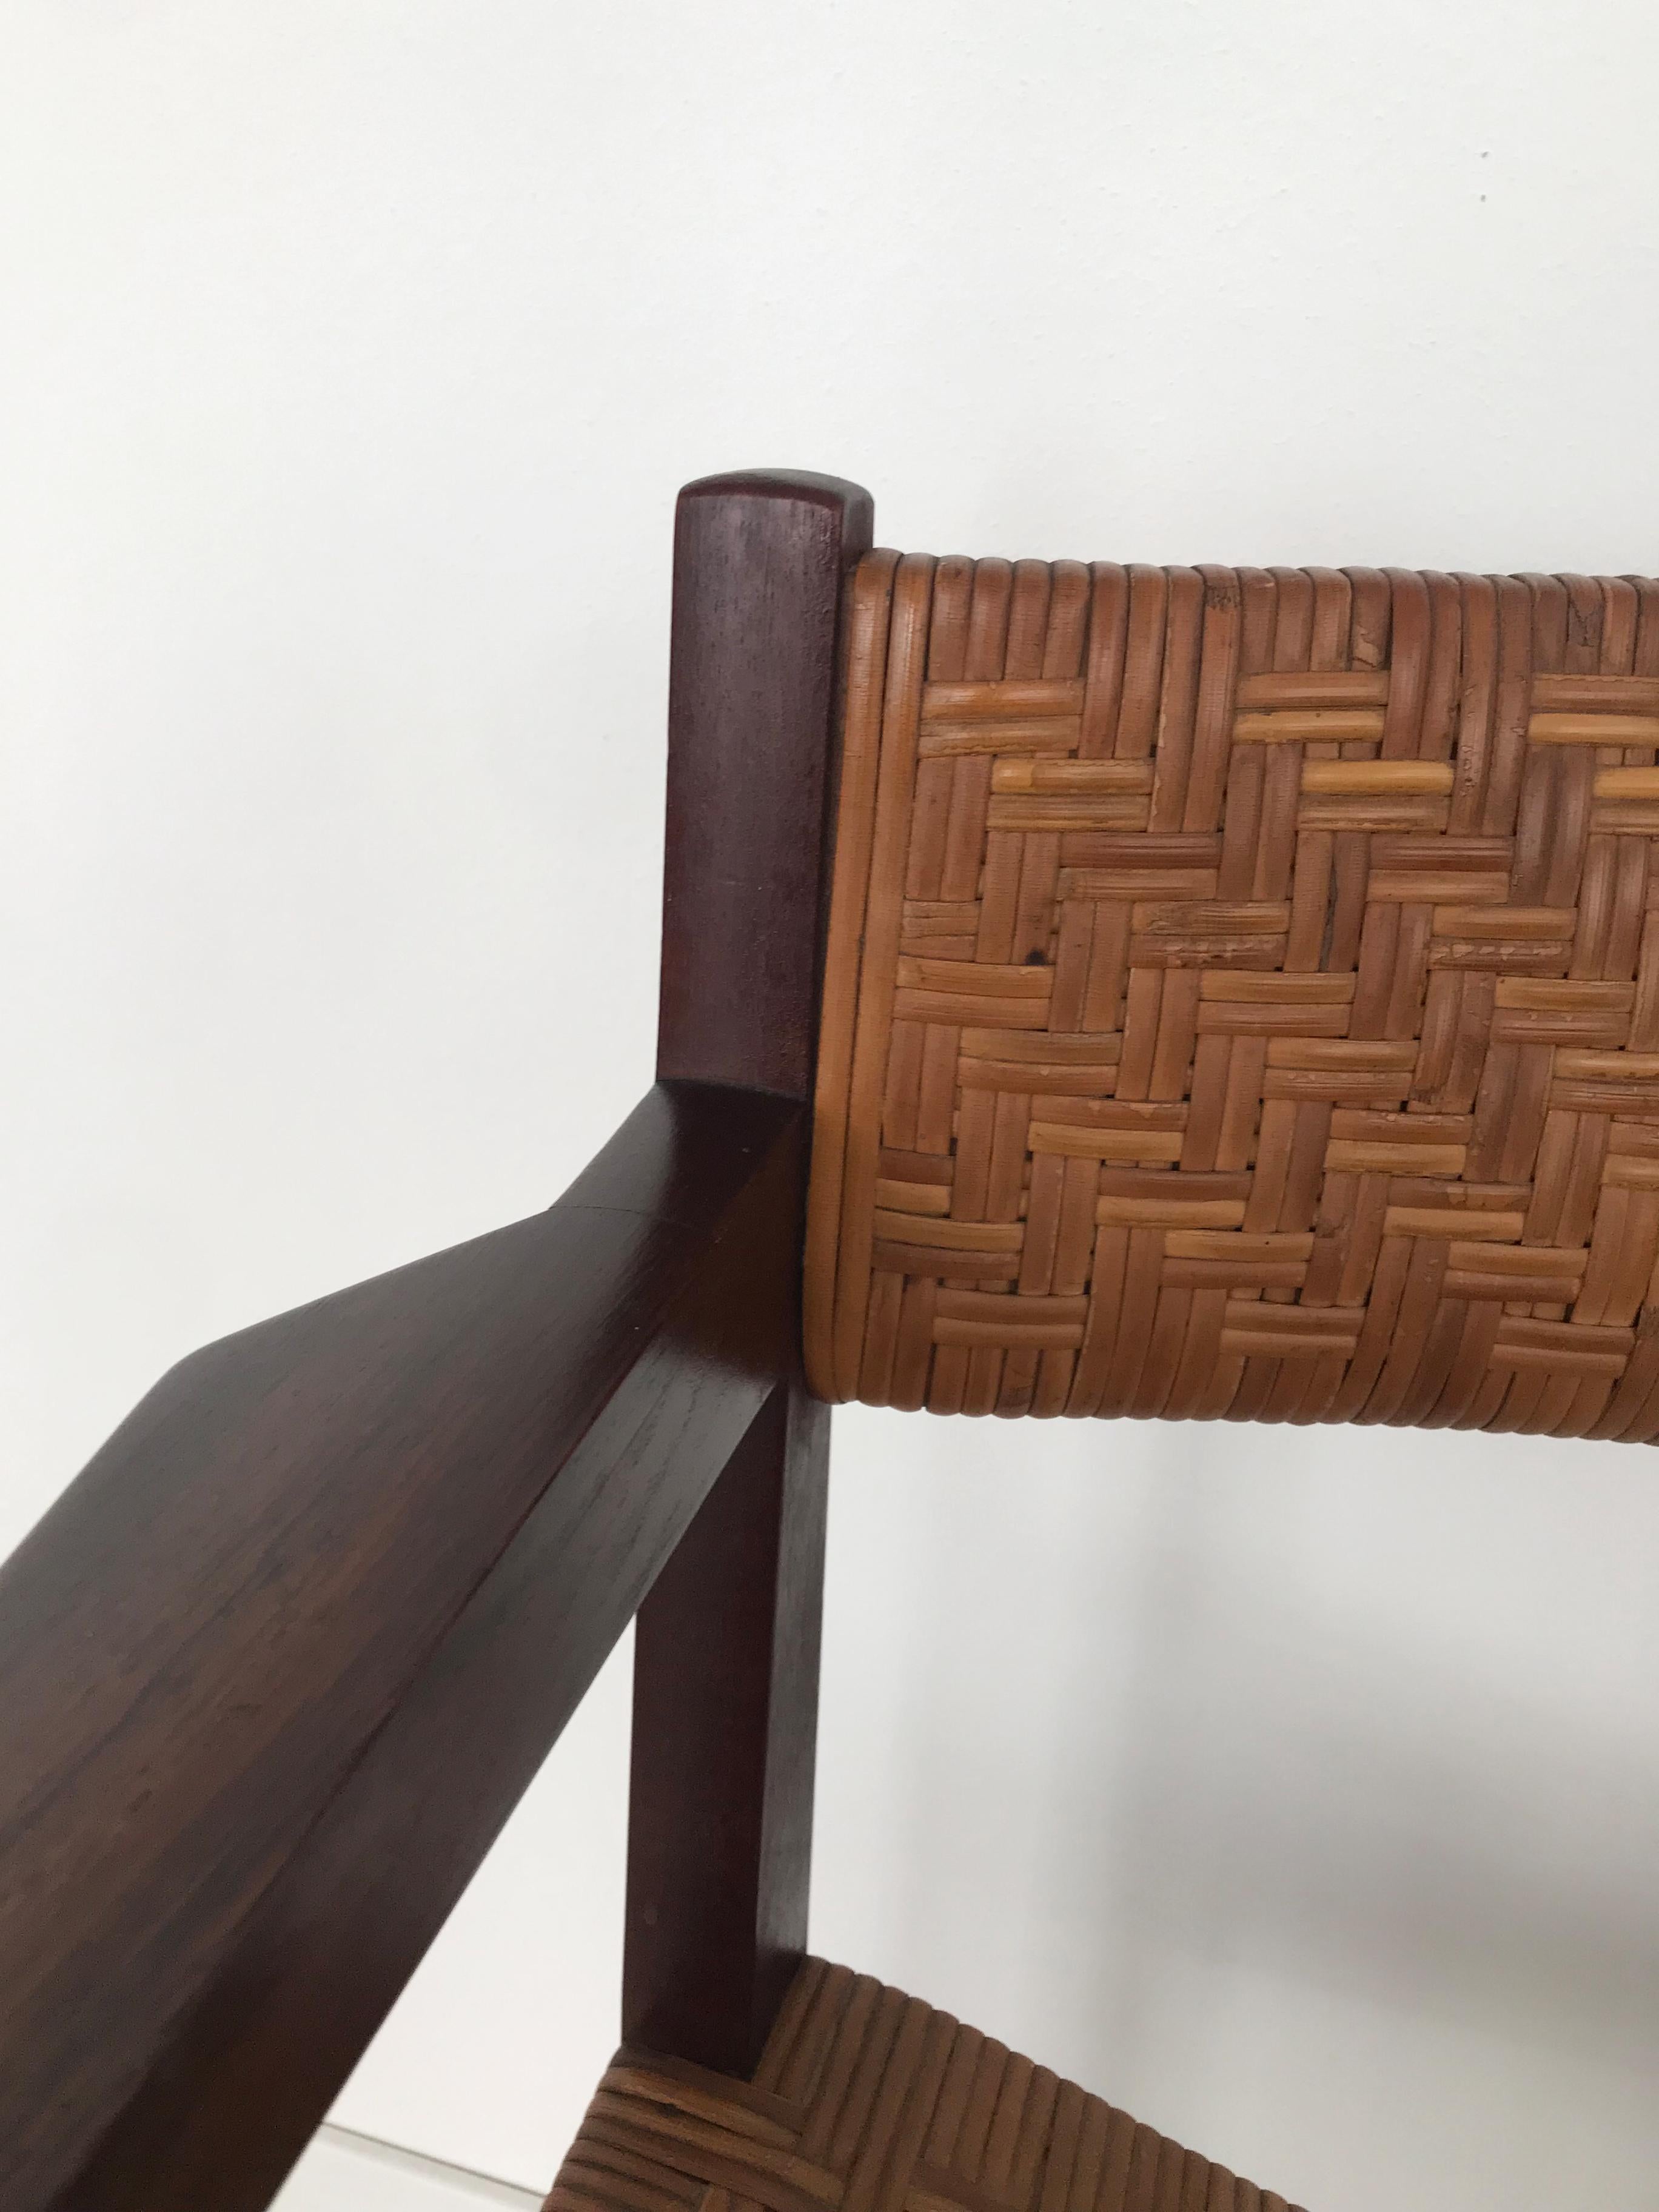 Hvidt & Orla Mølgaard Scandinavian Midcentury Rattan Wood Chair Armchair 1960s For Sale 2